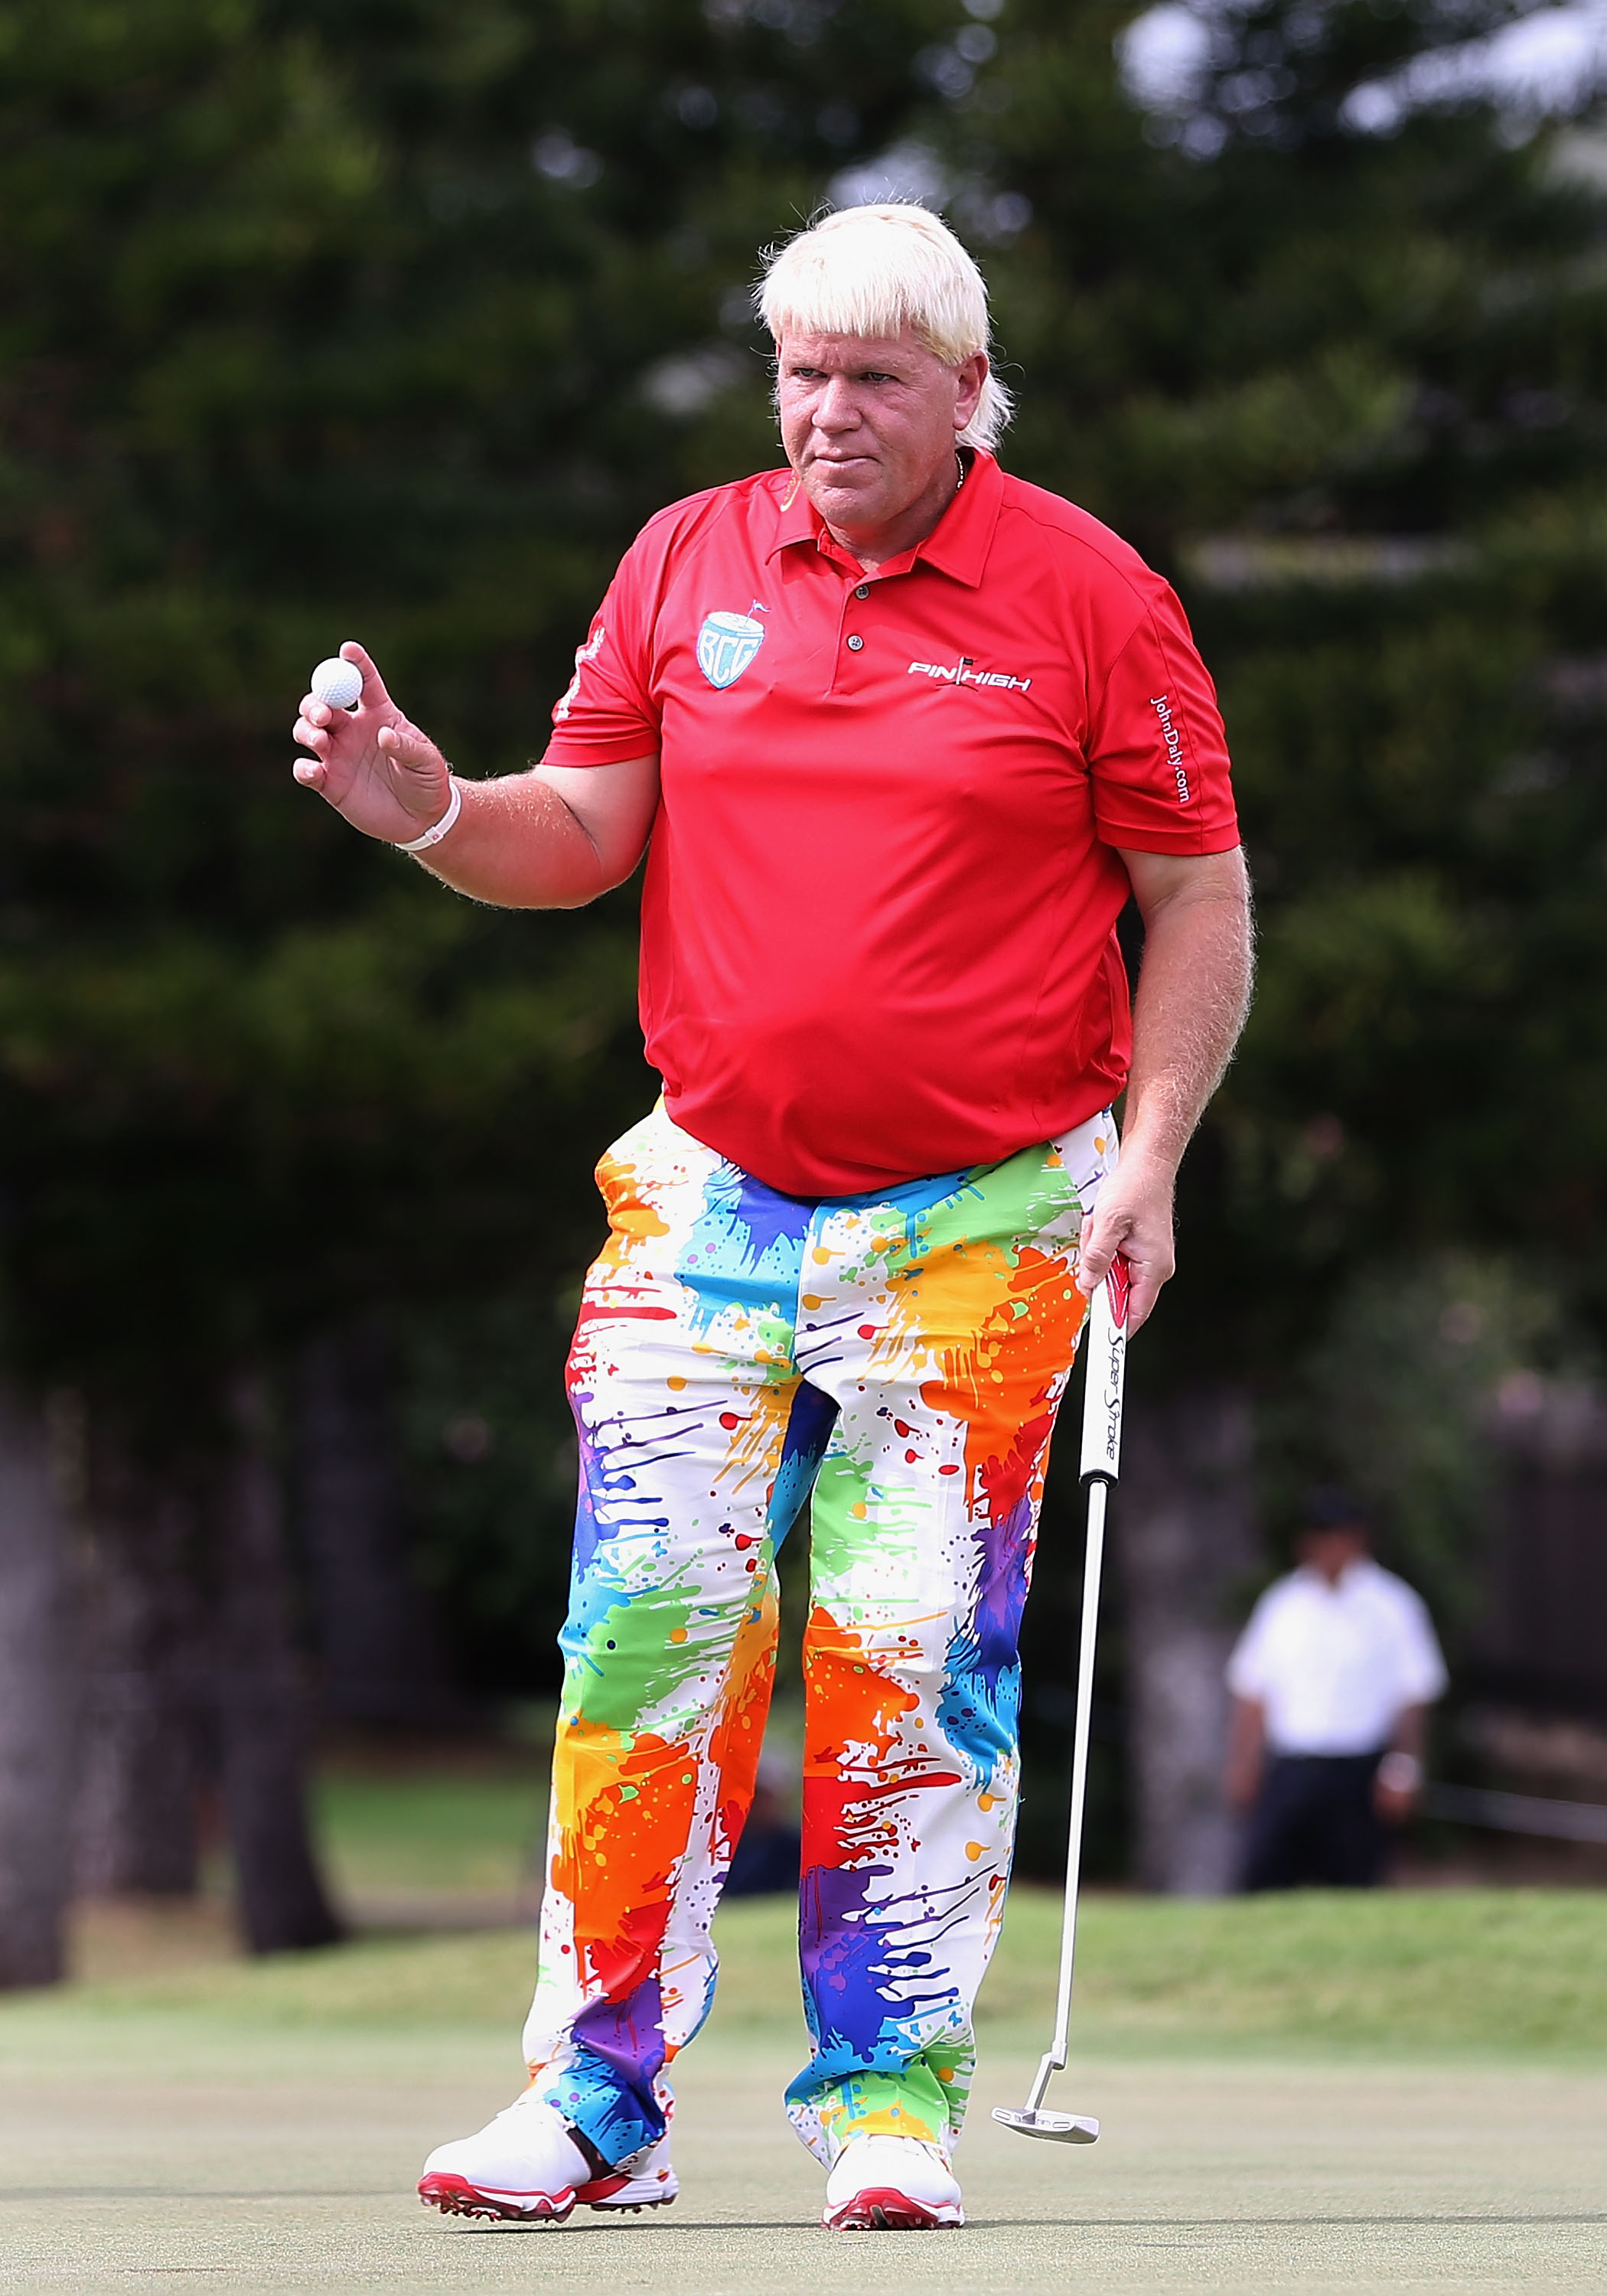 John Daly and his crazy pants #KiawahIsland #PGAChampionship #Golf  www.kiawahisland.com